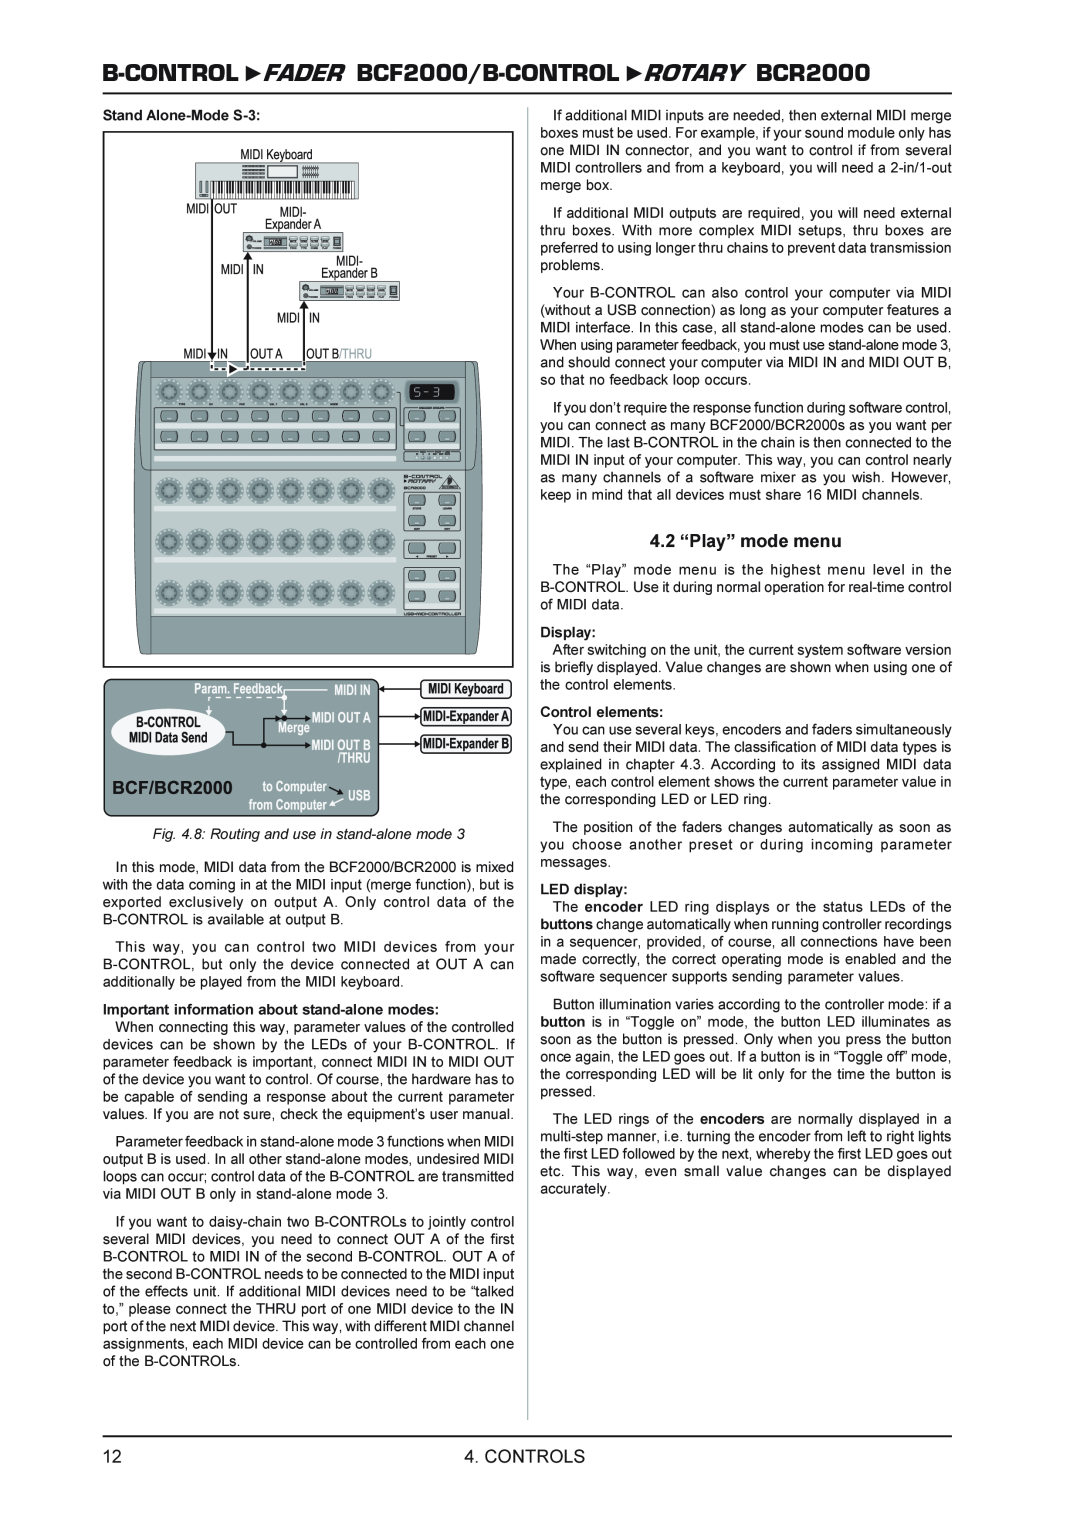 Behringer FADERB CF2000B manual 4.2 “Play” mode menu, B-CONTROL FADER BCF2000/B-CONTROL ROTARY BCR2000, Controls 